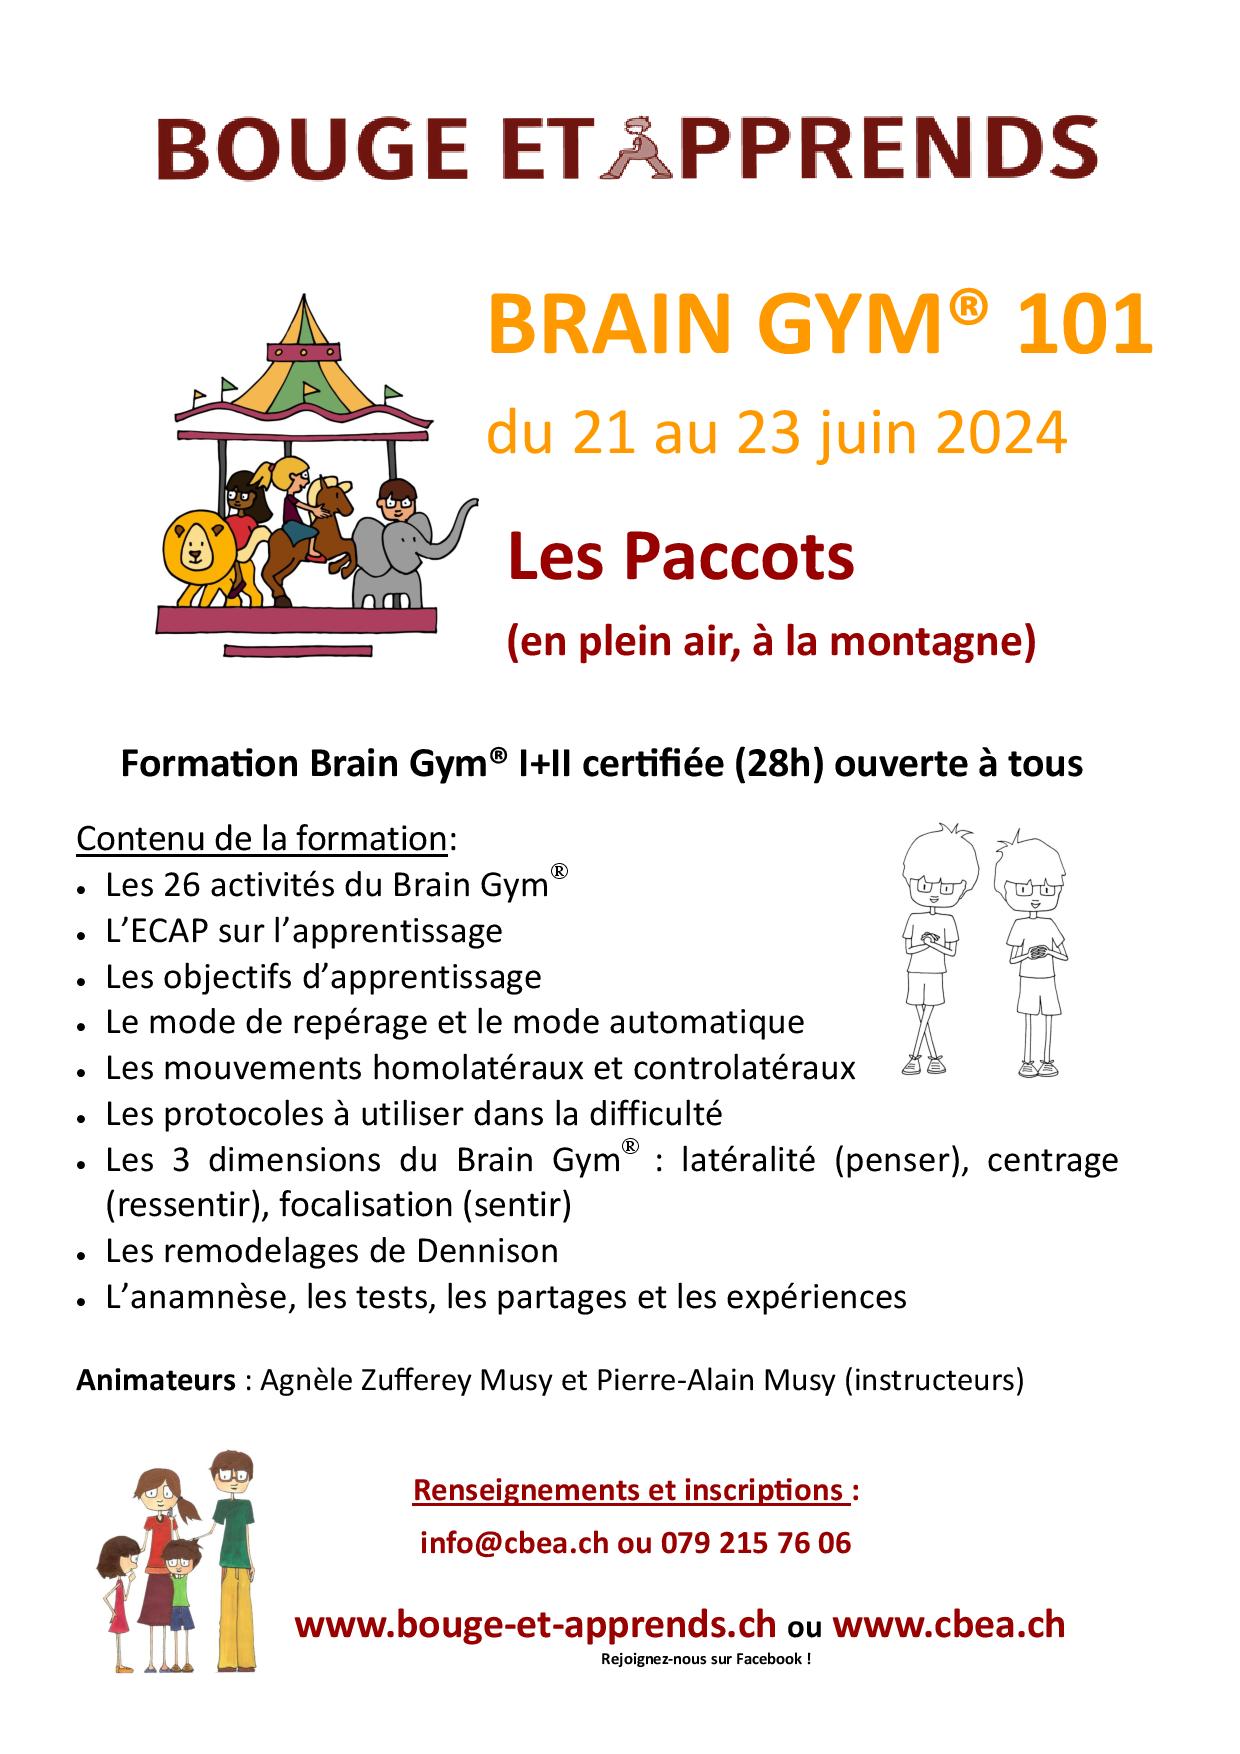 Brain Gym Les Paccots 21 23 juin 2024